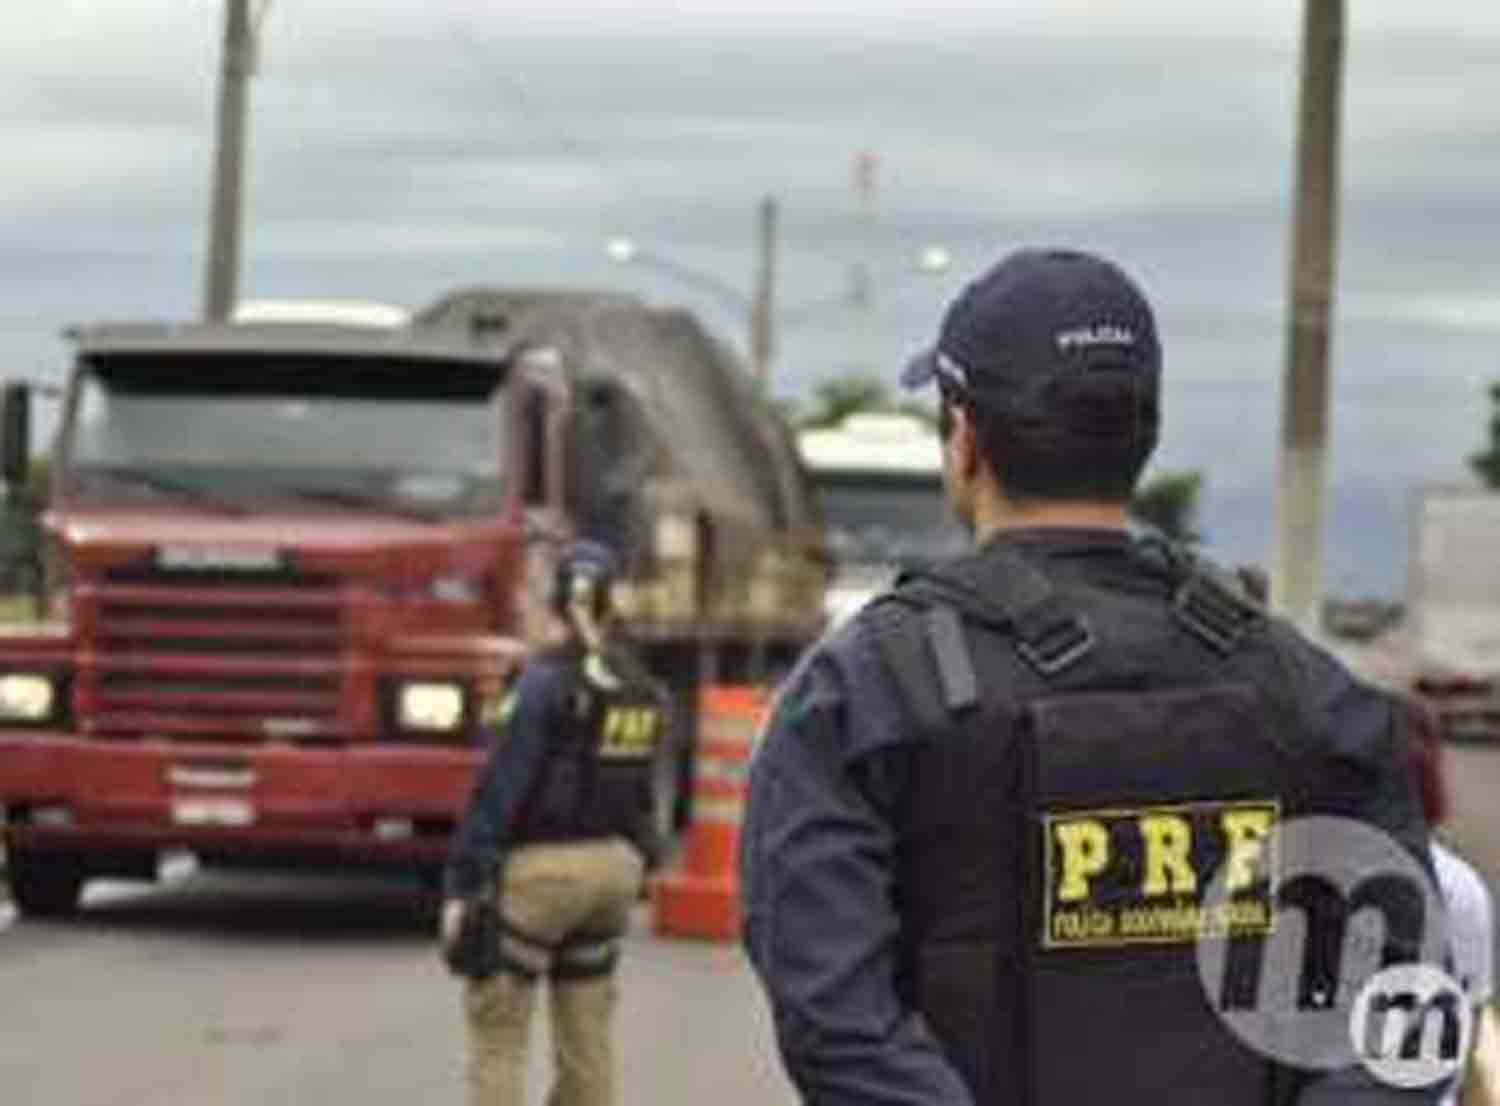 PCC organiza ‘grande assalto’ em Mato Grosso do Sul, alerta polícia paraguaia